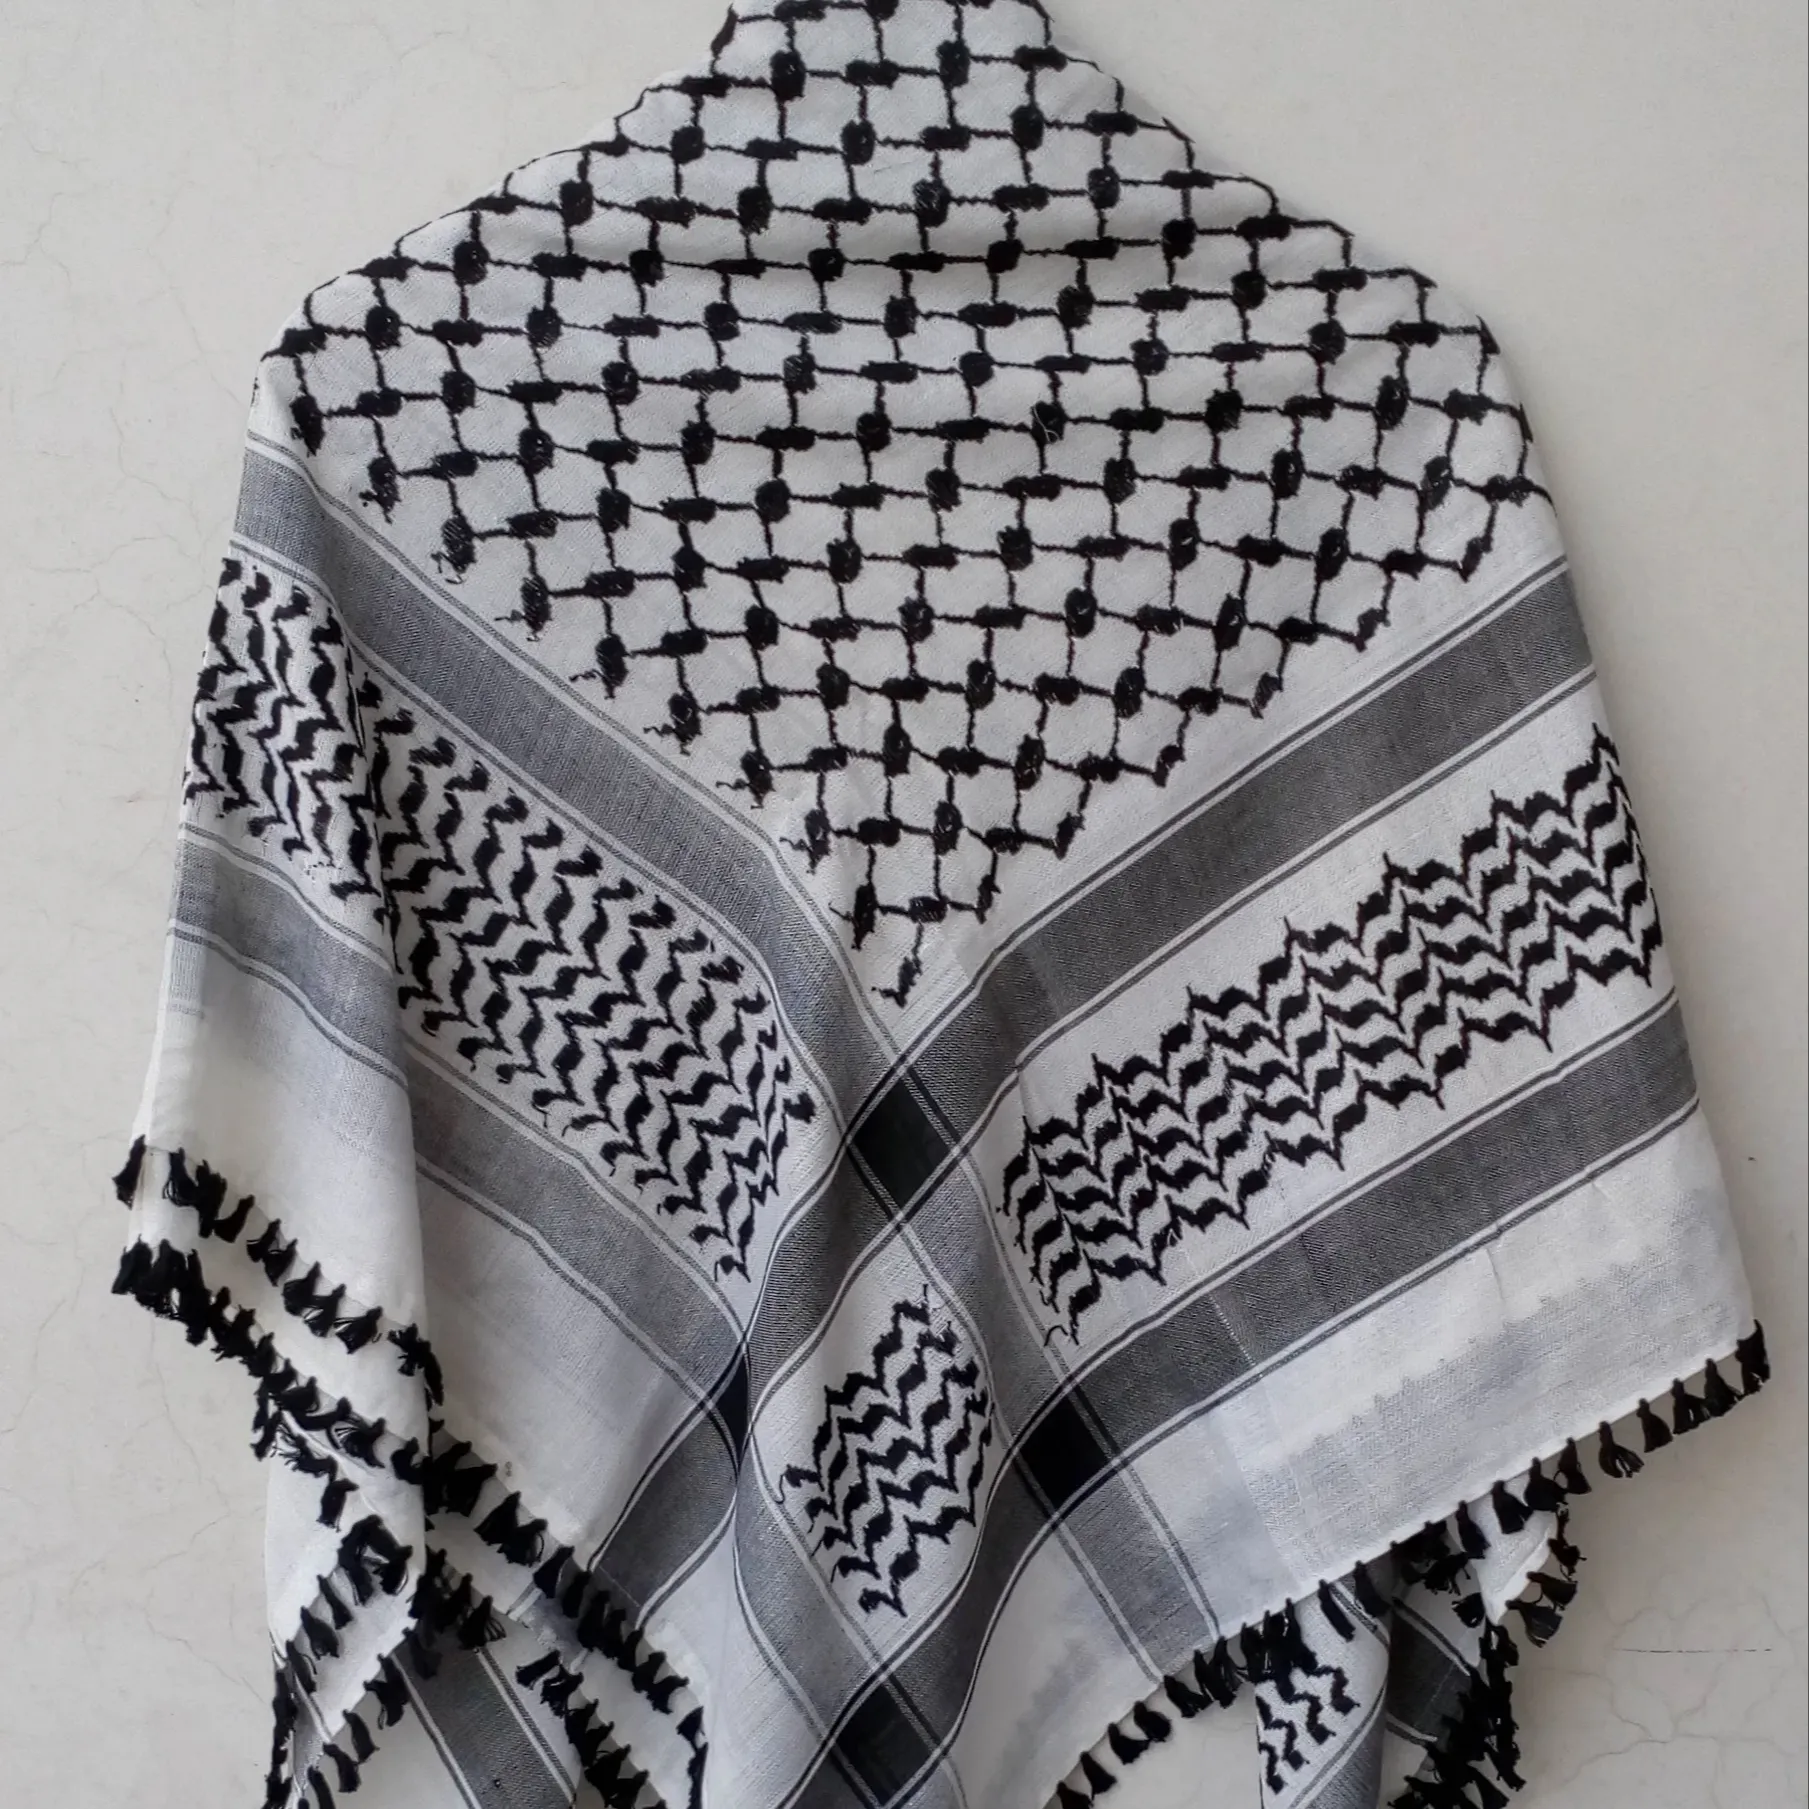 Shemagh Arafati Keffiyeah Bufandas árabes Poly algodón Arafat keffiyeah Shemagh Bufandas 48 "x 48" Negro blanco Shemagh bufandas